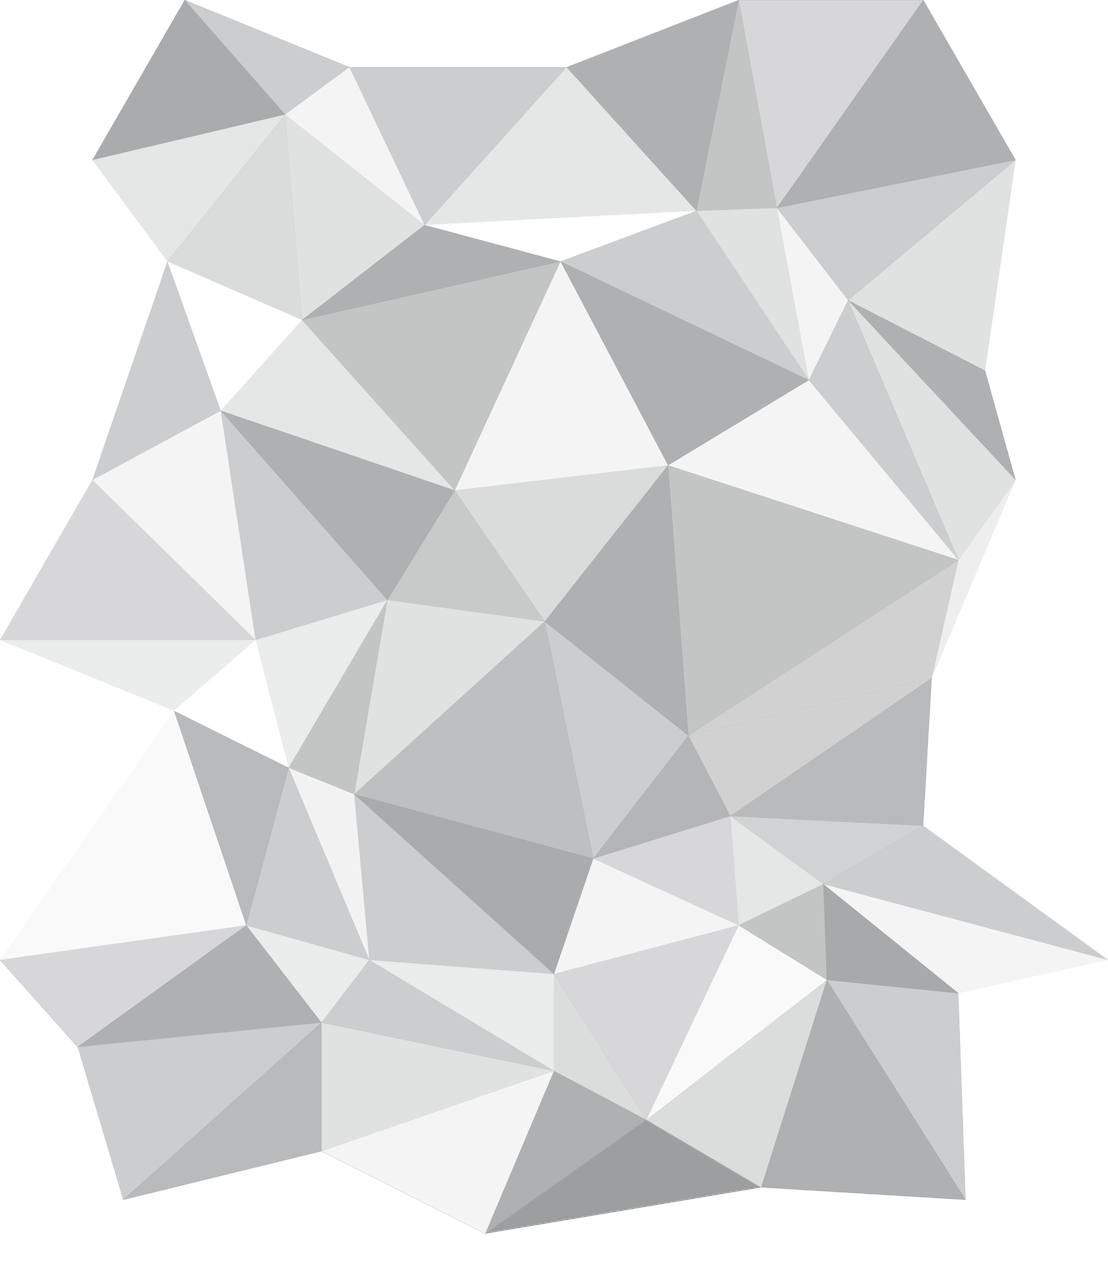 Imagen del PNG del triángulo abstracto